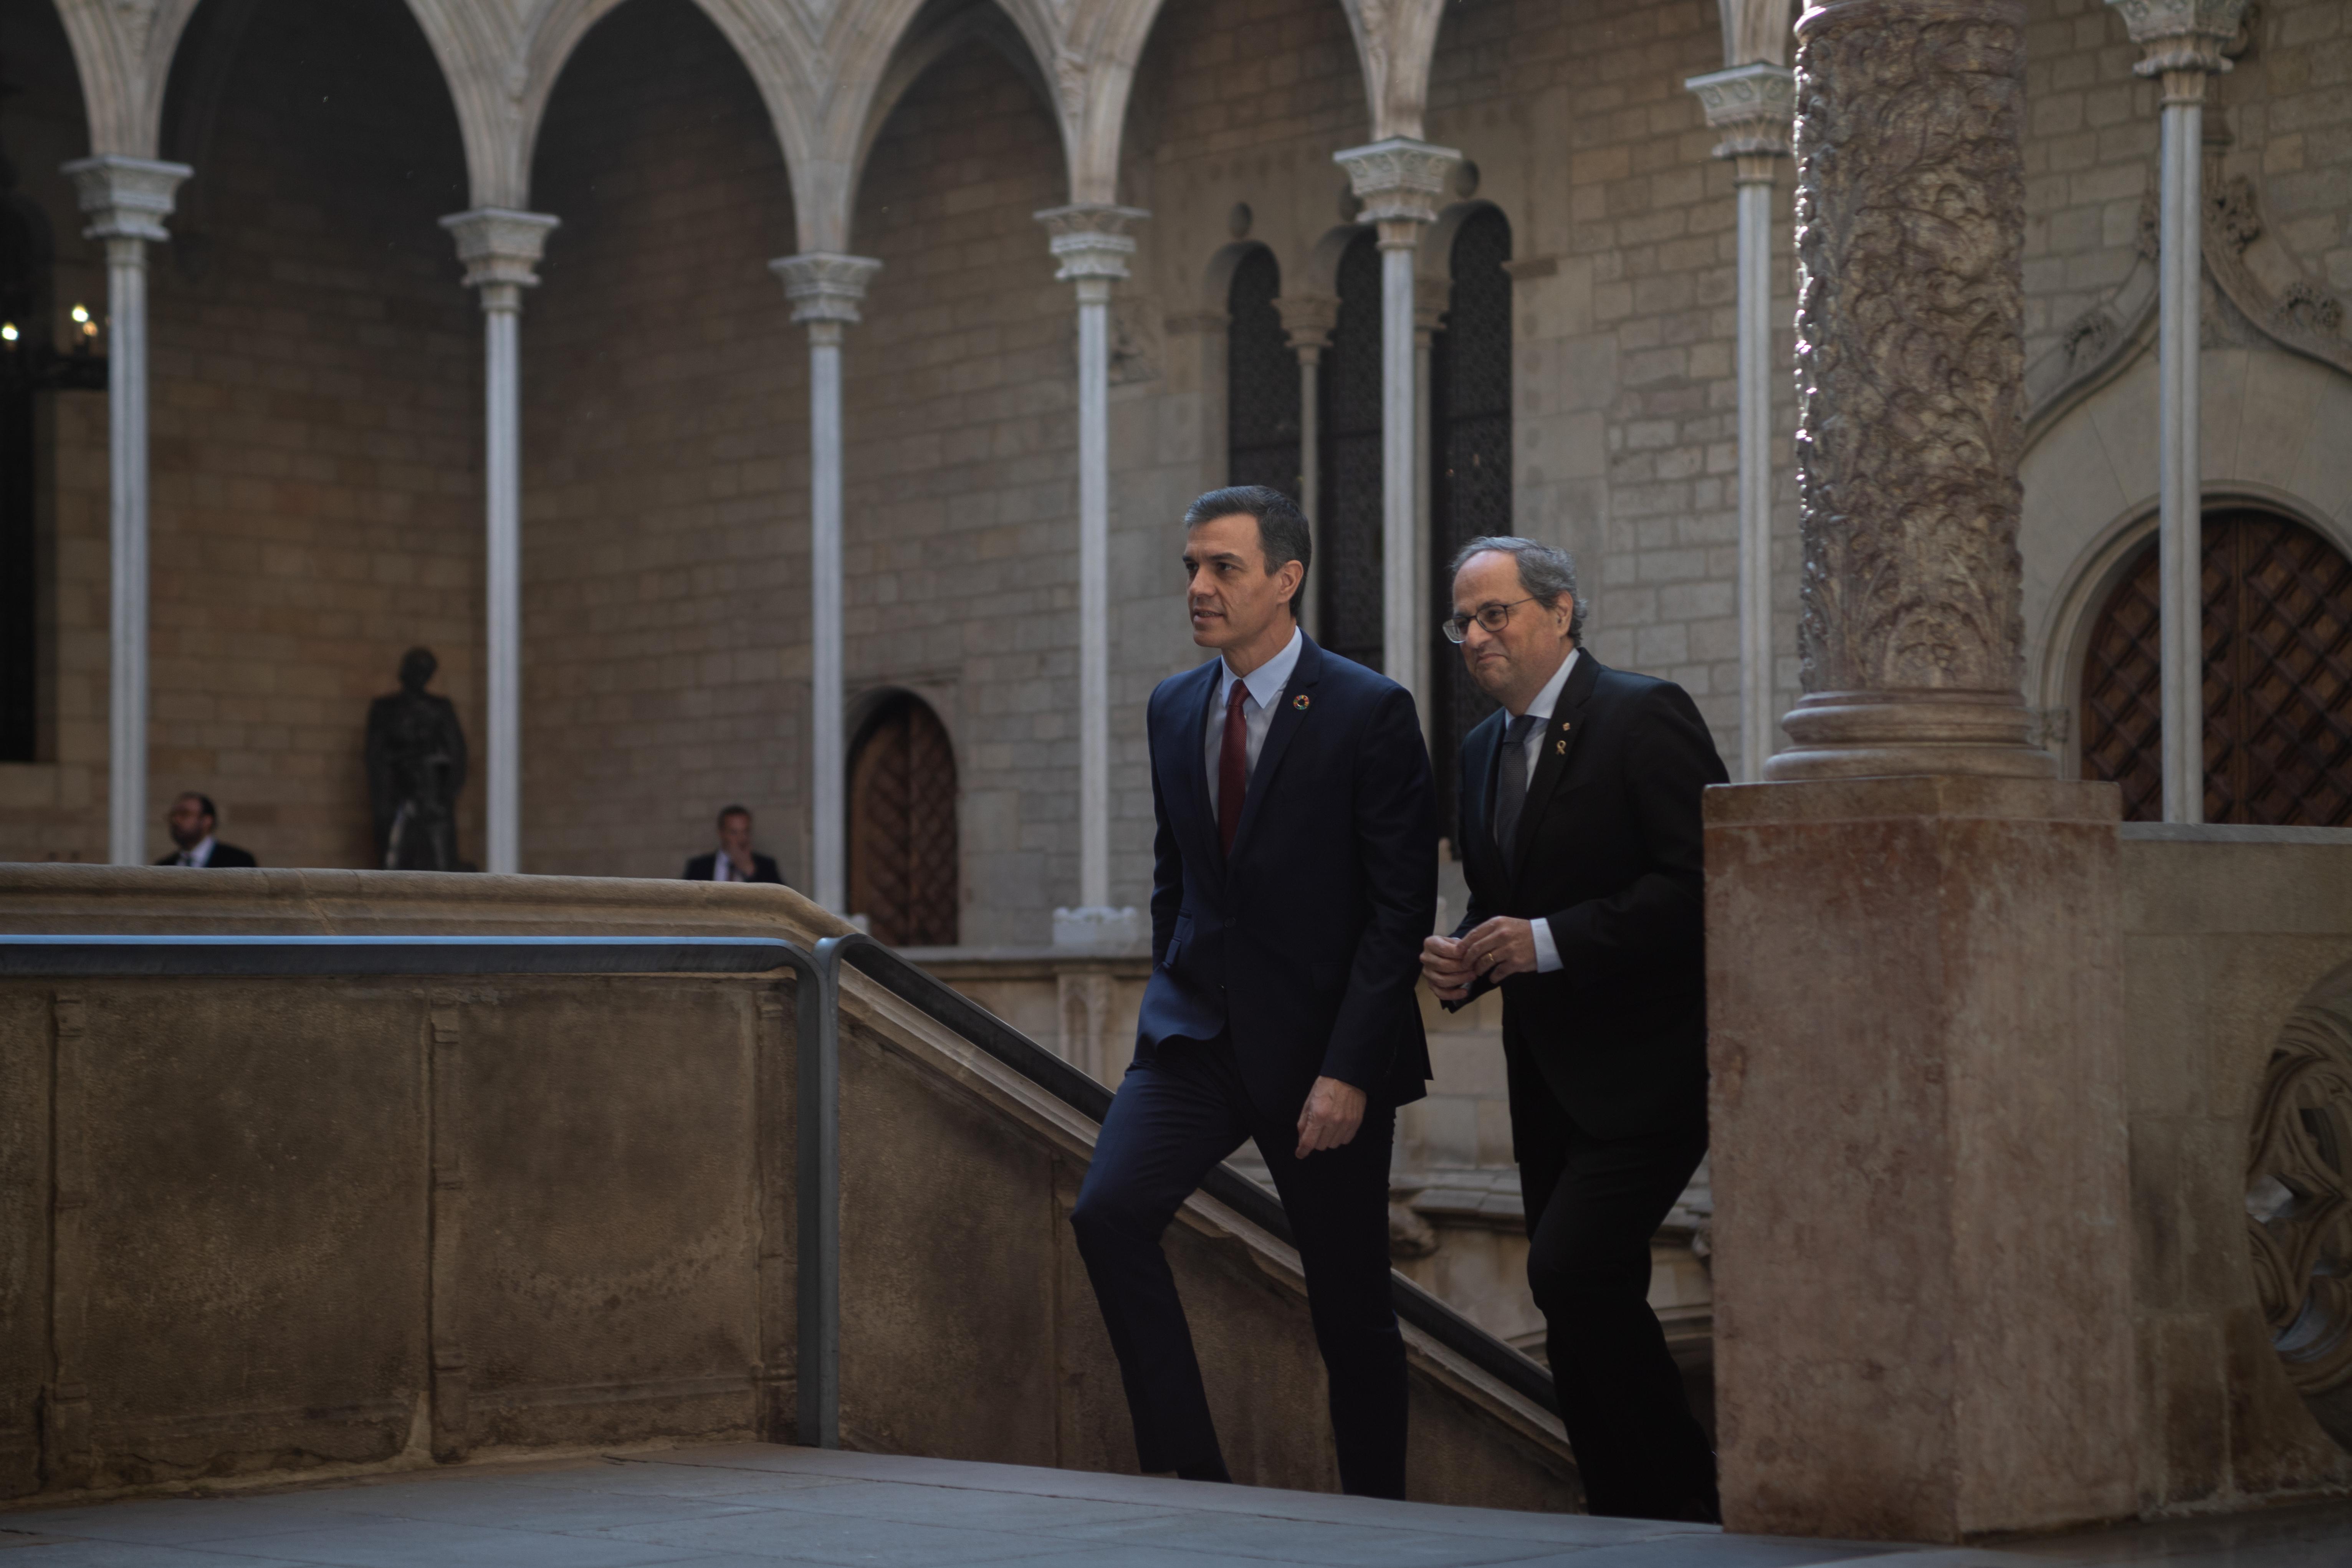 El presidente de la Generalitat Quim Torra (dehc) y el presidente del Gobierno Pedro Sánchez (izq) a su llegada al Palau de la Generalitat antes de su reunión en Barcelona Catalunya (Españ